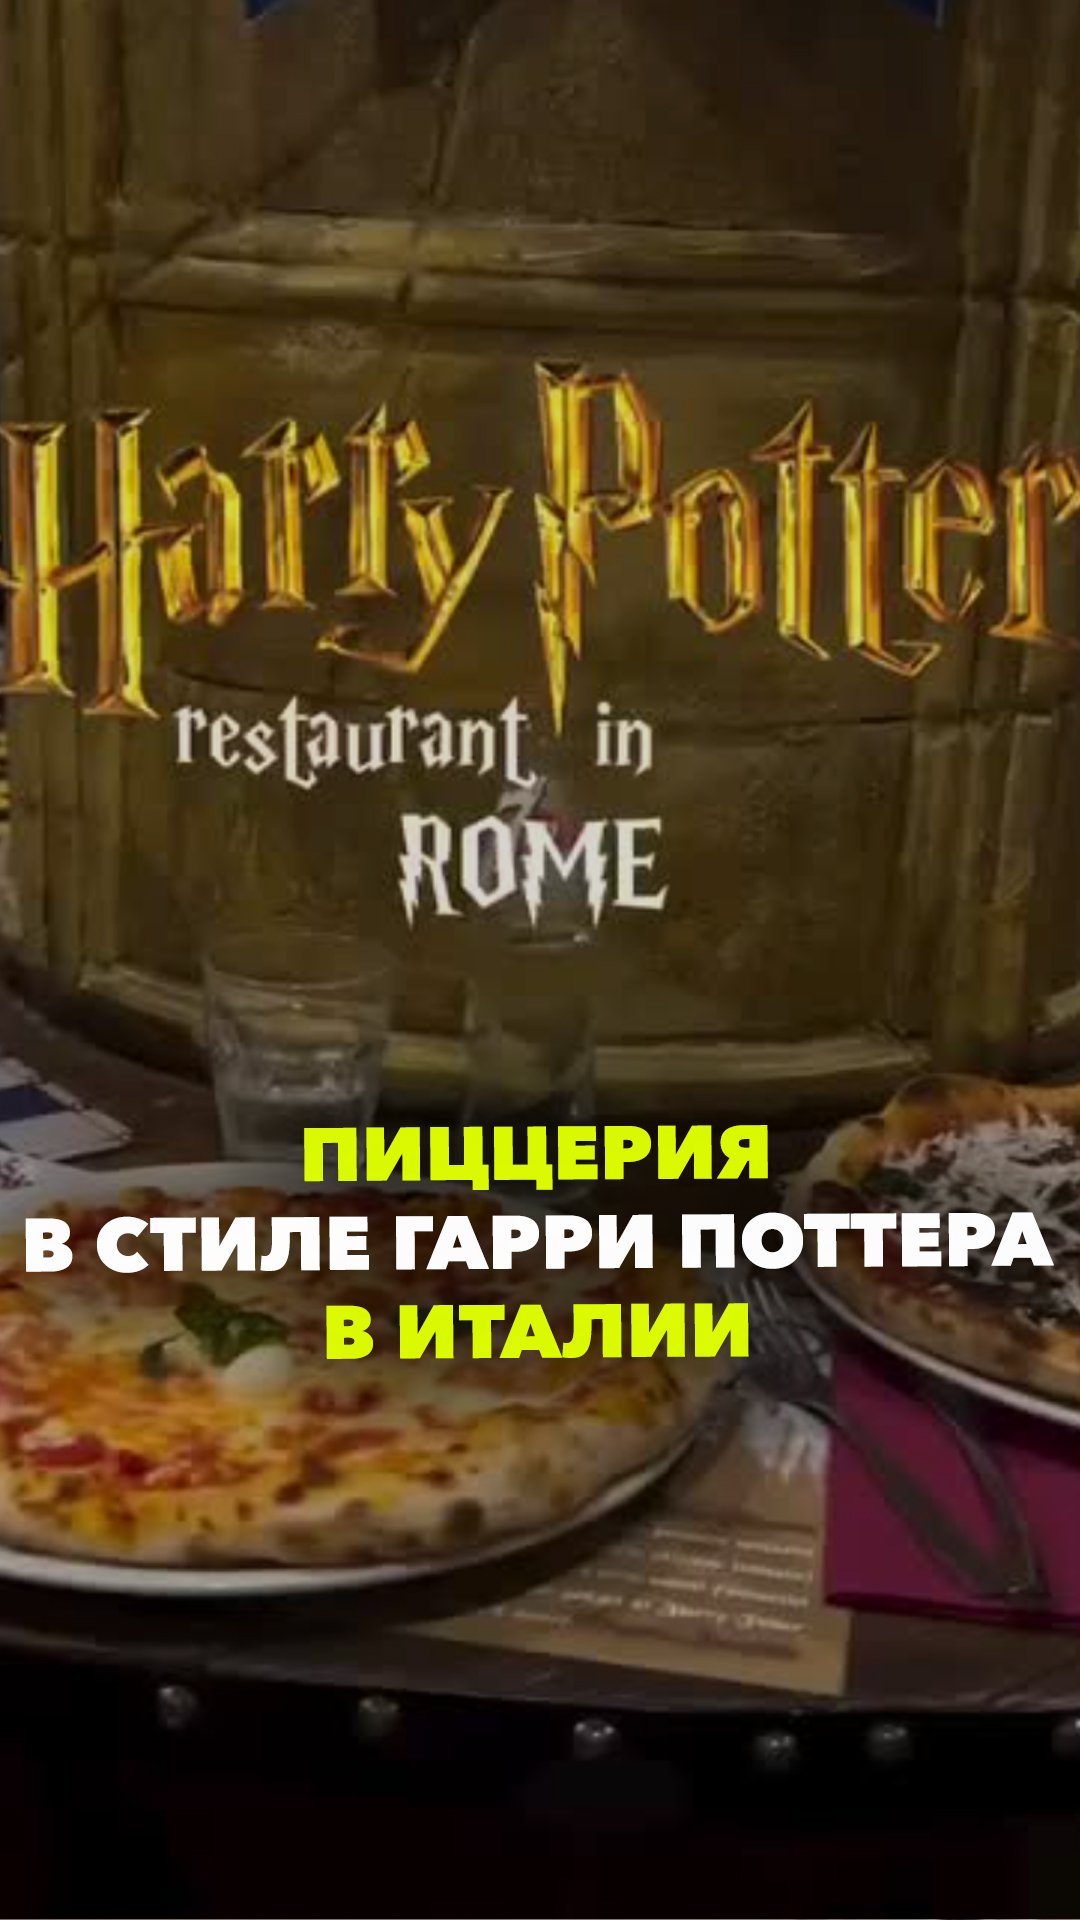 Хогвартс перебазировался в Рим: пиццерию в стиле вселенной Гарри Поттера открыли в Италии